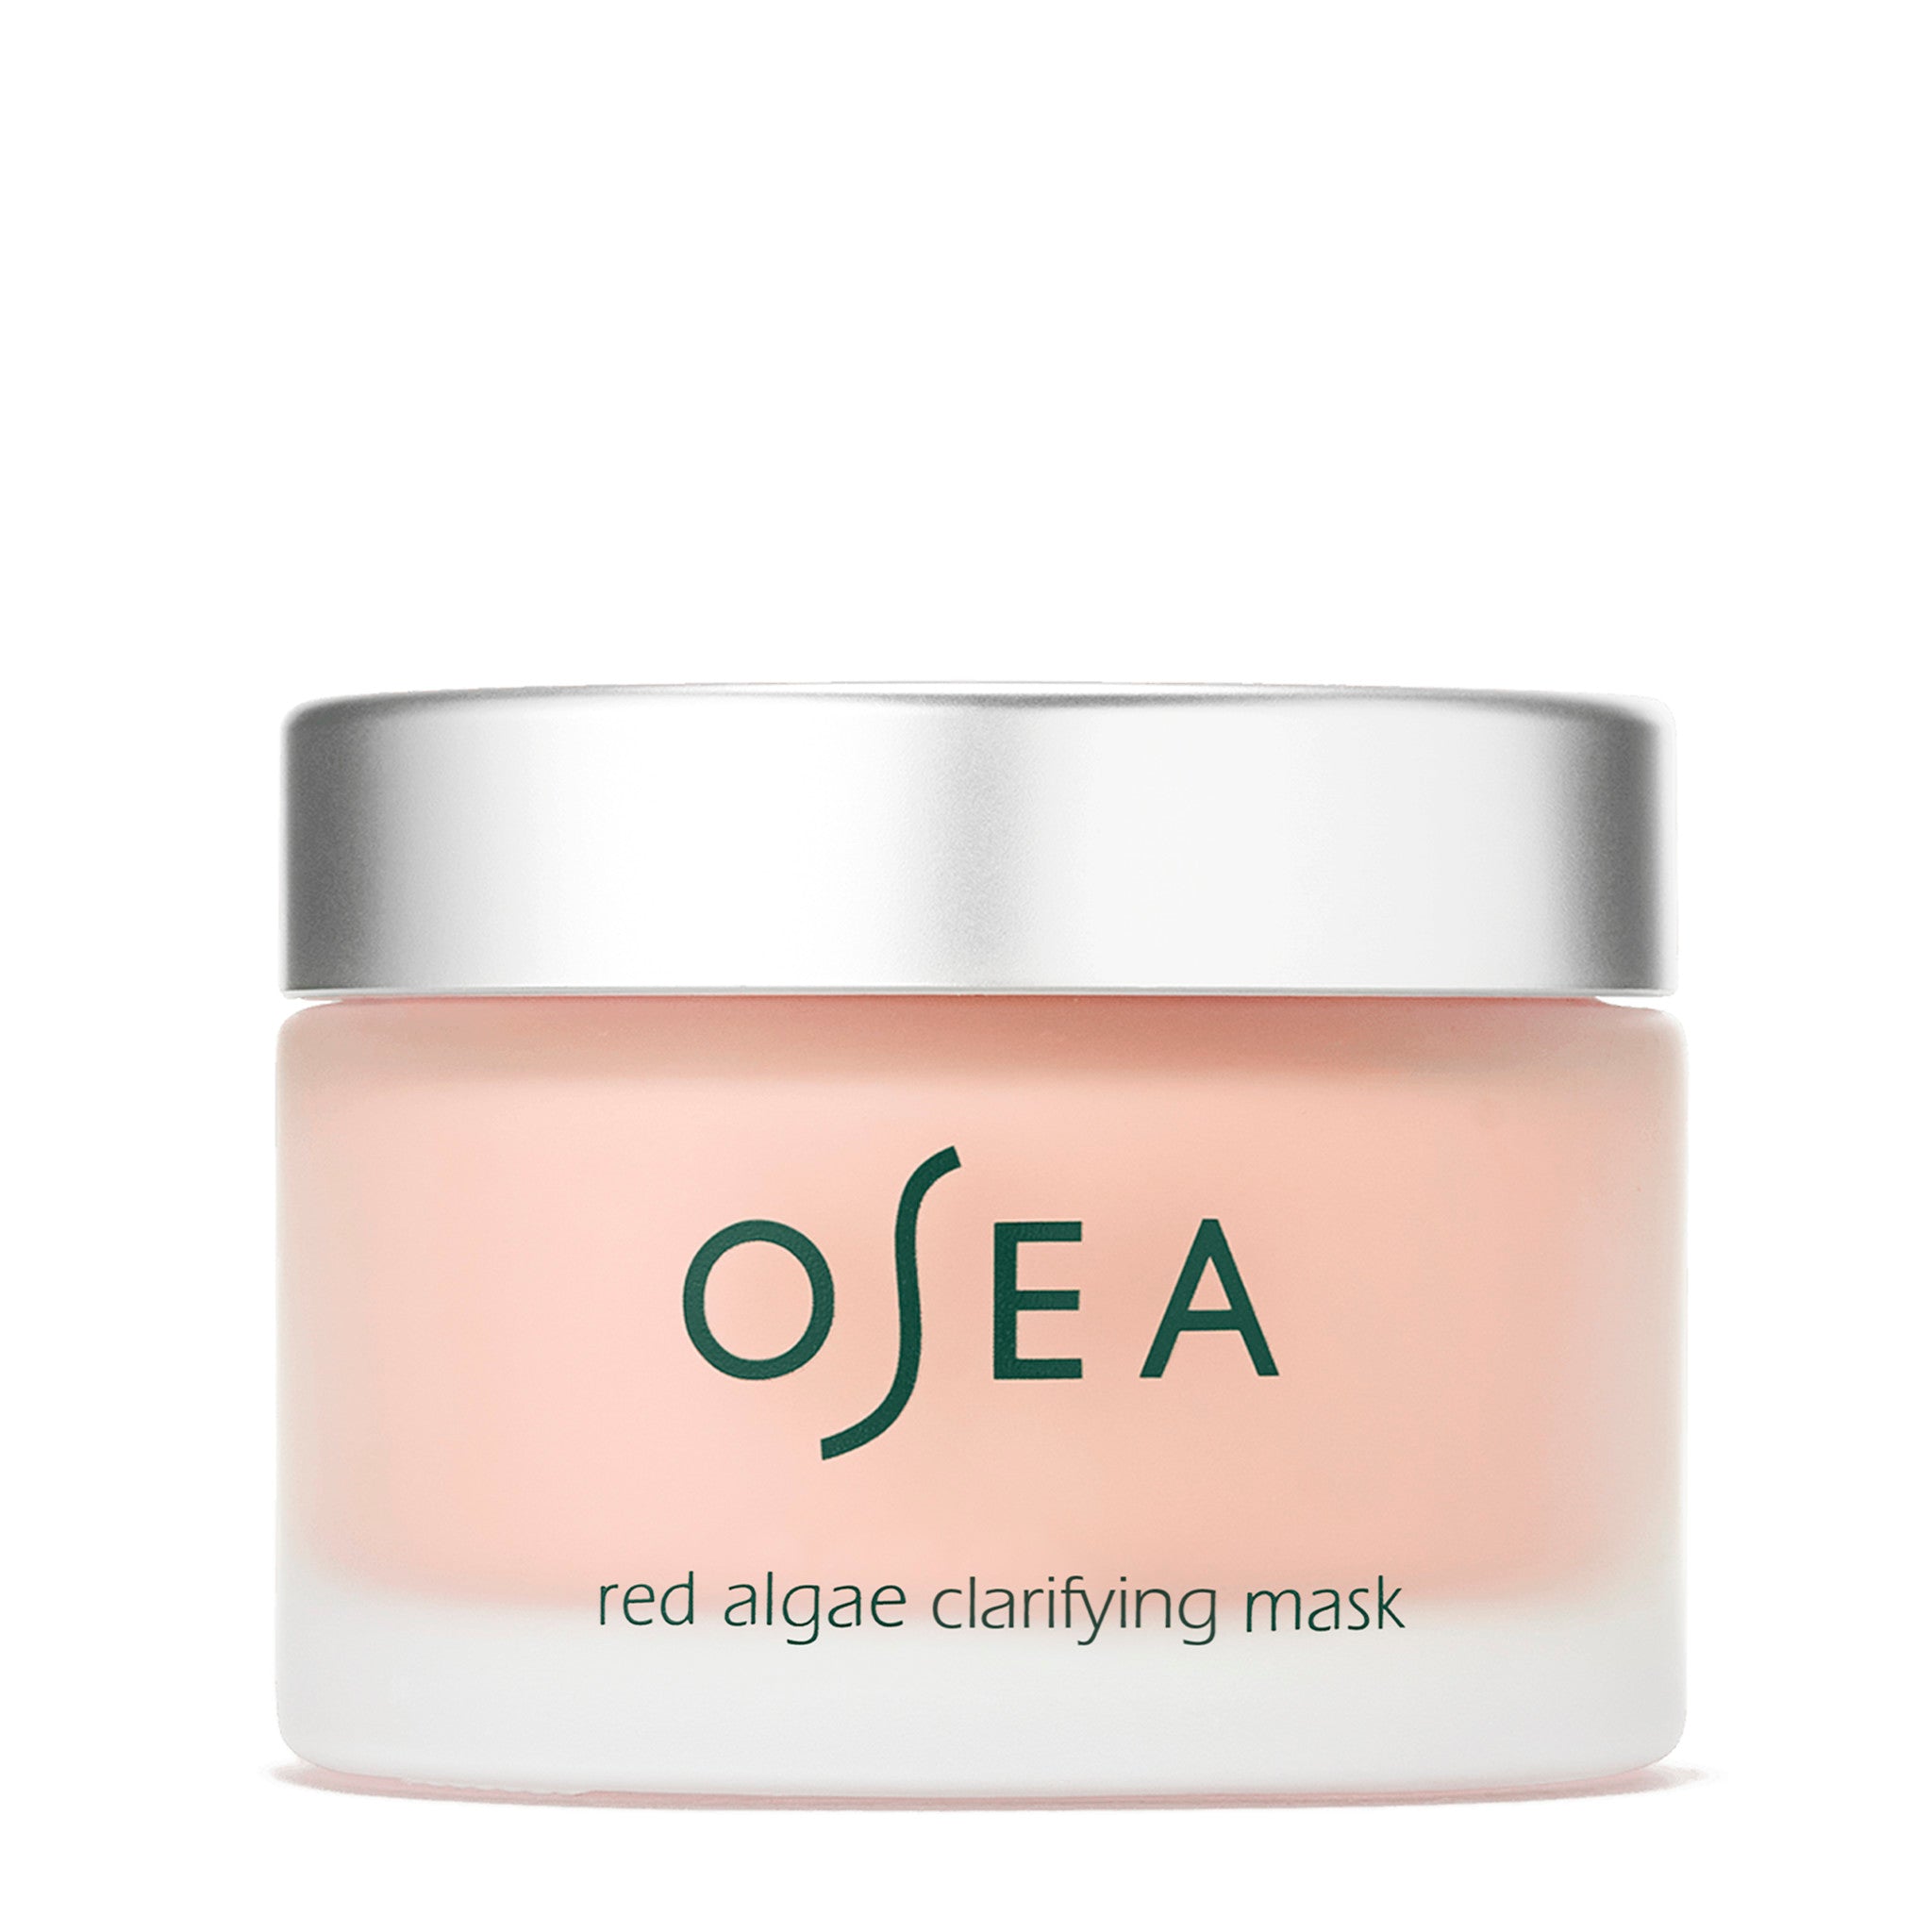 OSEA Red Algae Clarifying Mask main image.